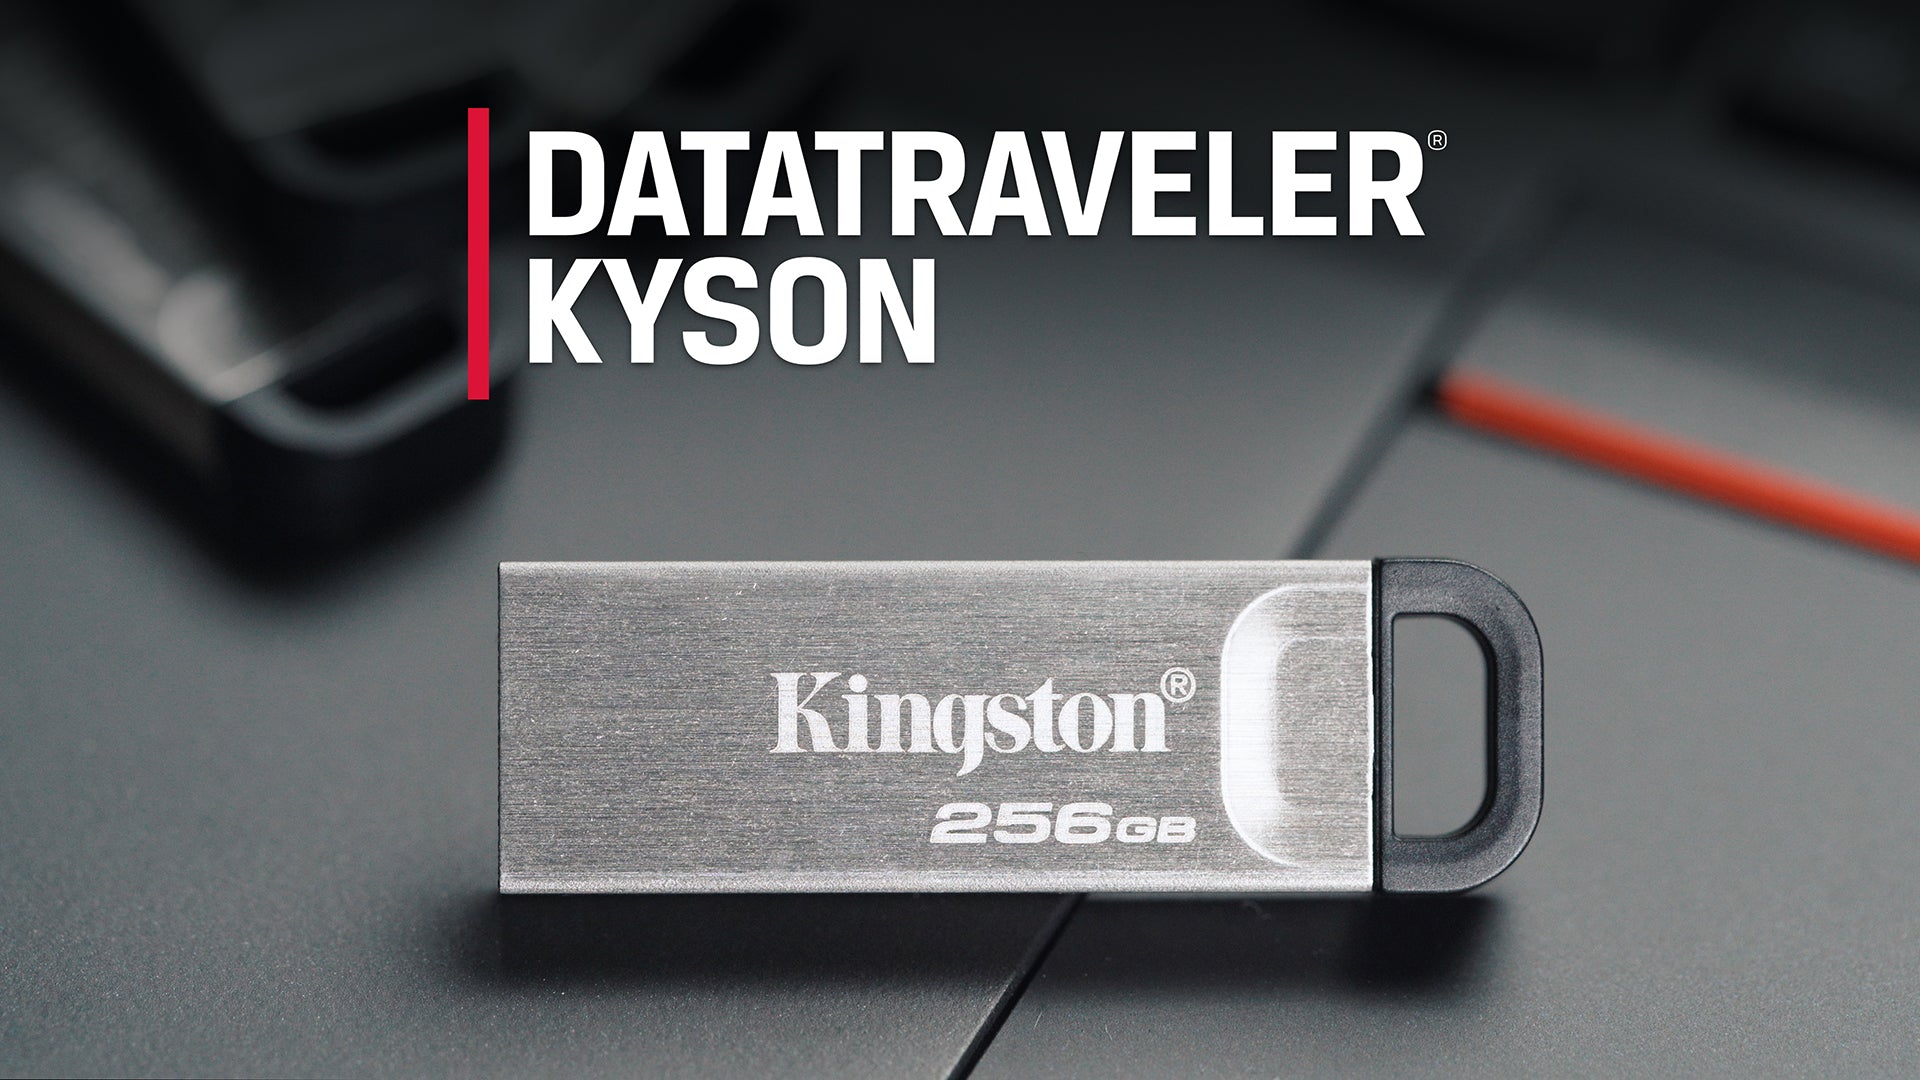 DataTraveler Kyson USB Flash Drive